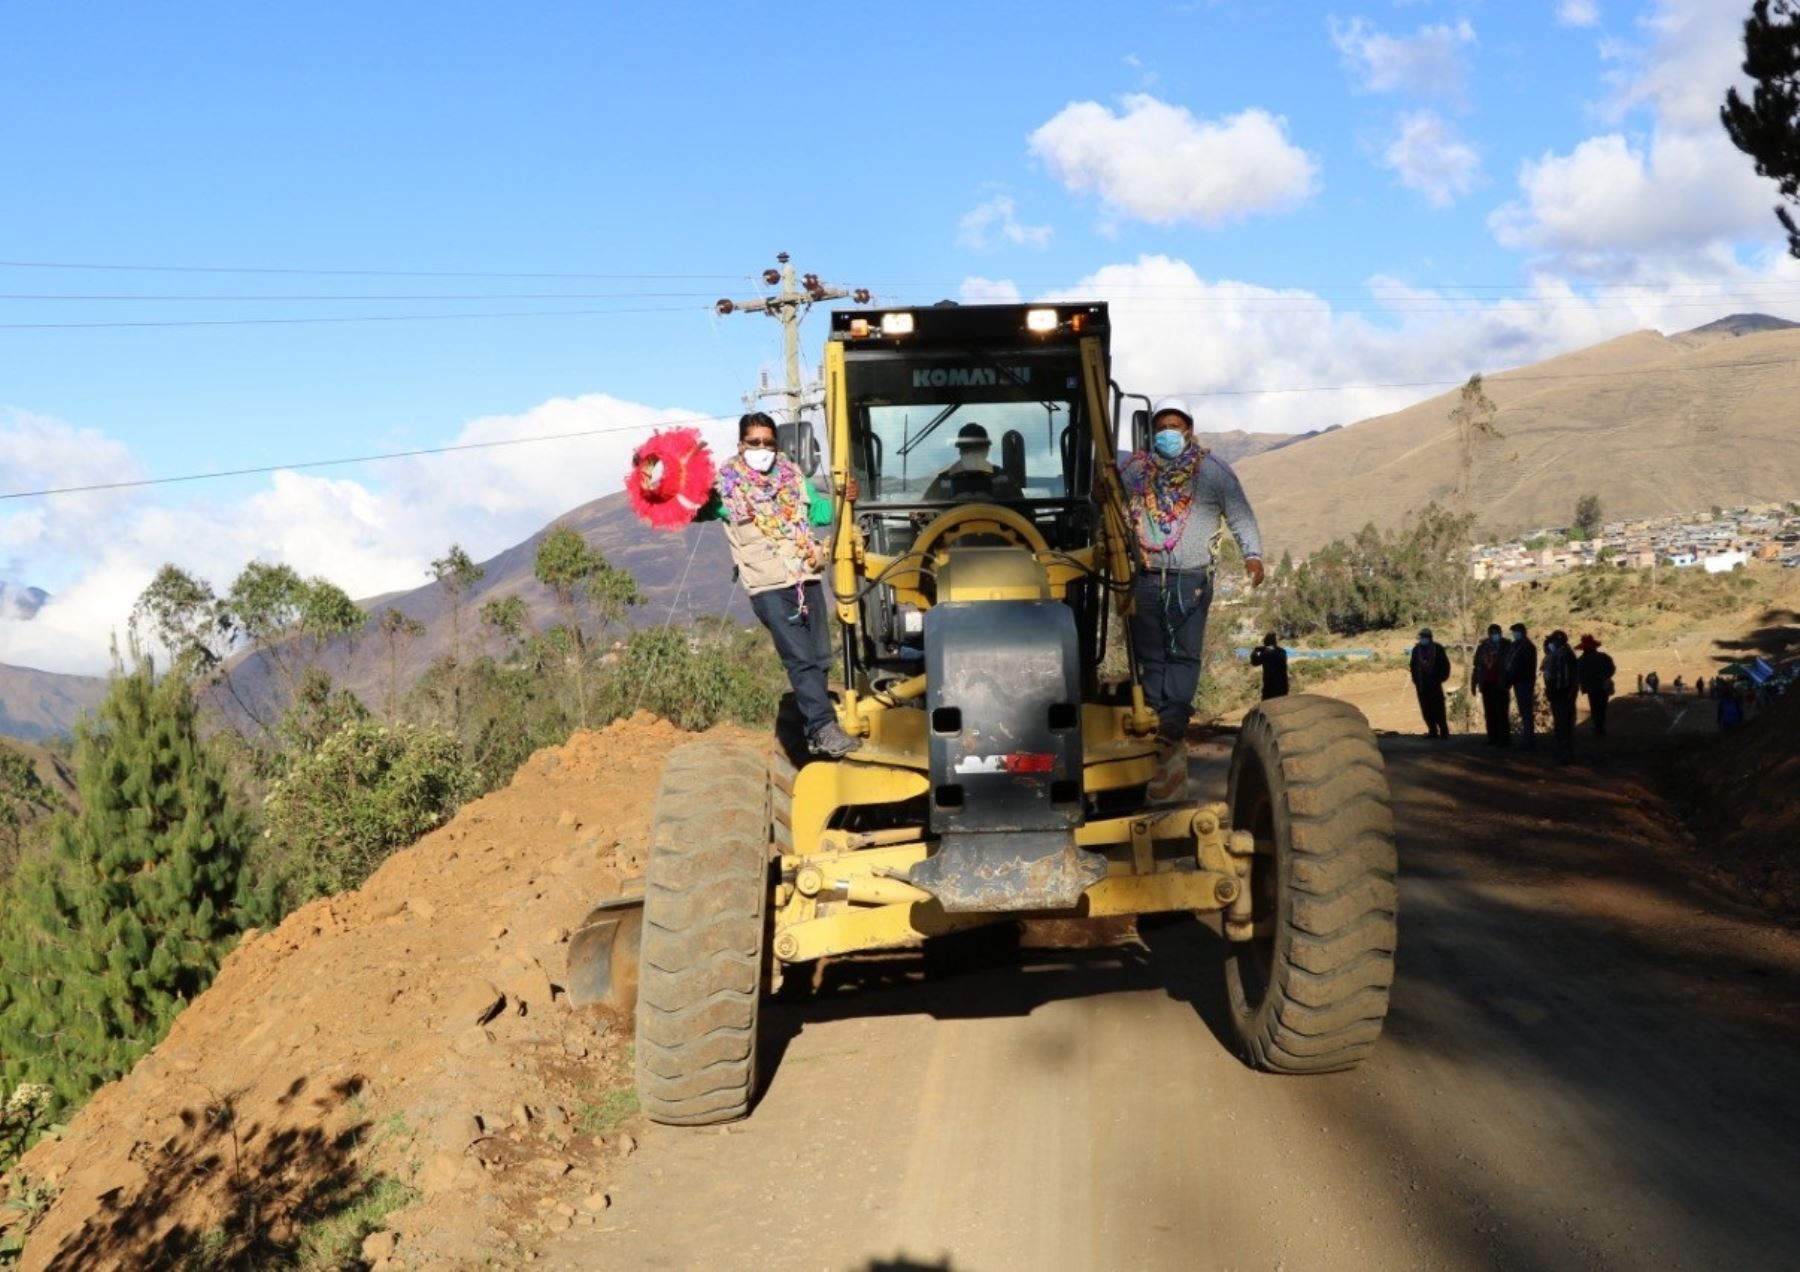 Se inició la obra vial para fortalecer la producción de café en el valle de Isquilaya, ubicado en la provincia de Carabaya, región Puno. ANDINA/Difusión